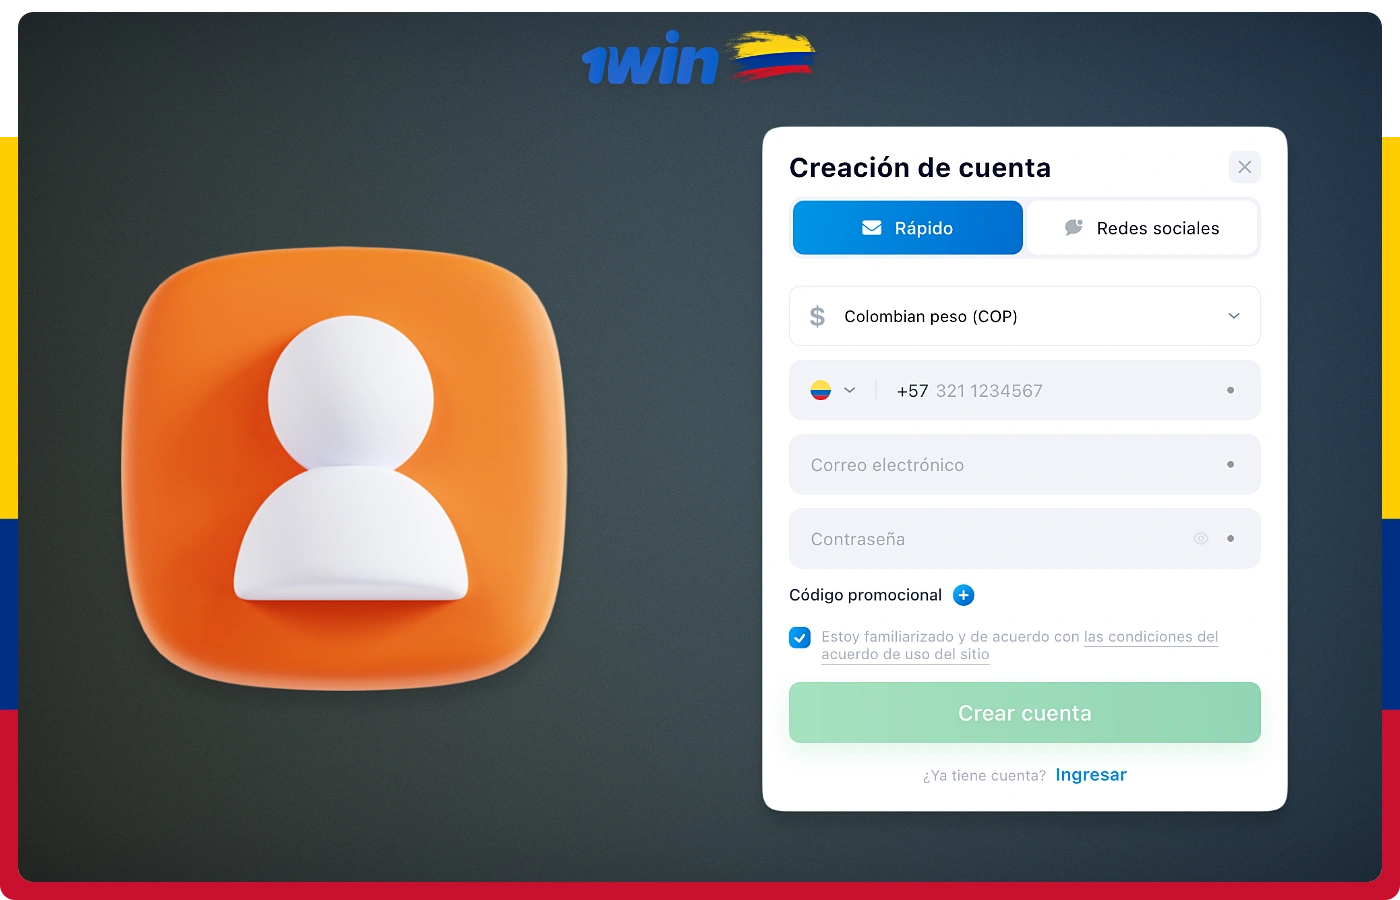 Los usuarios de 1win en Colombia pueden crear una cuenta utilizando uno de los siguientes métodos